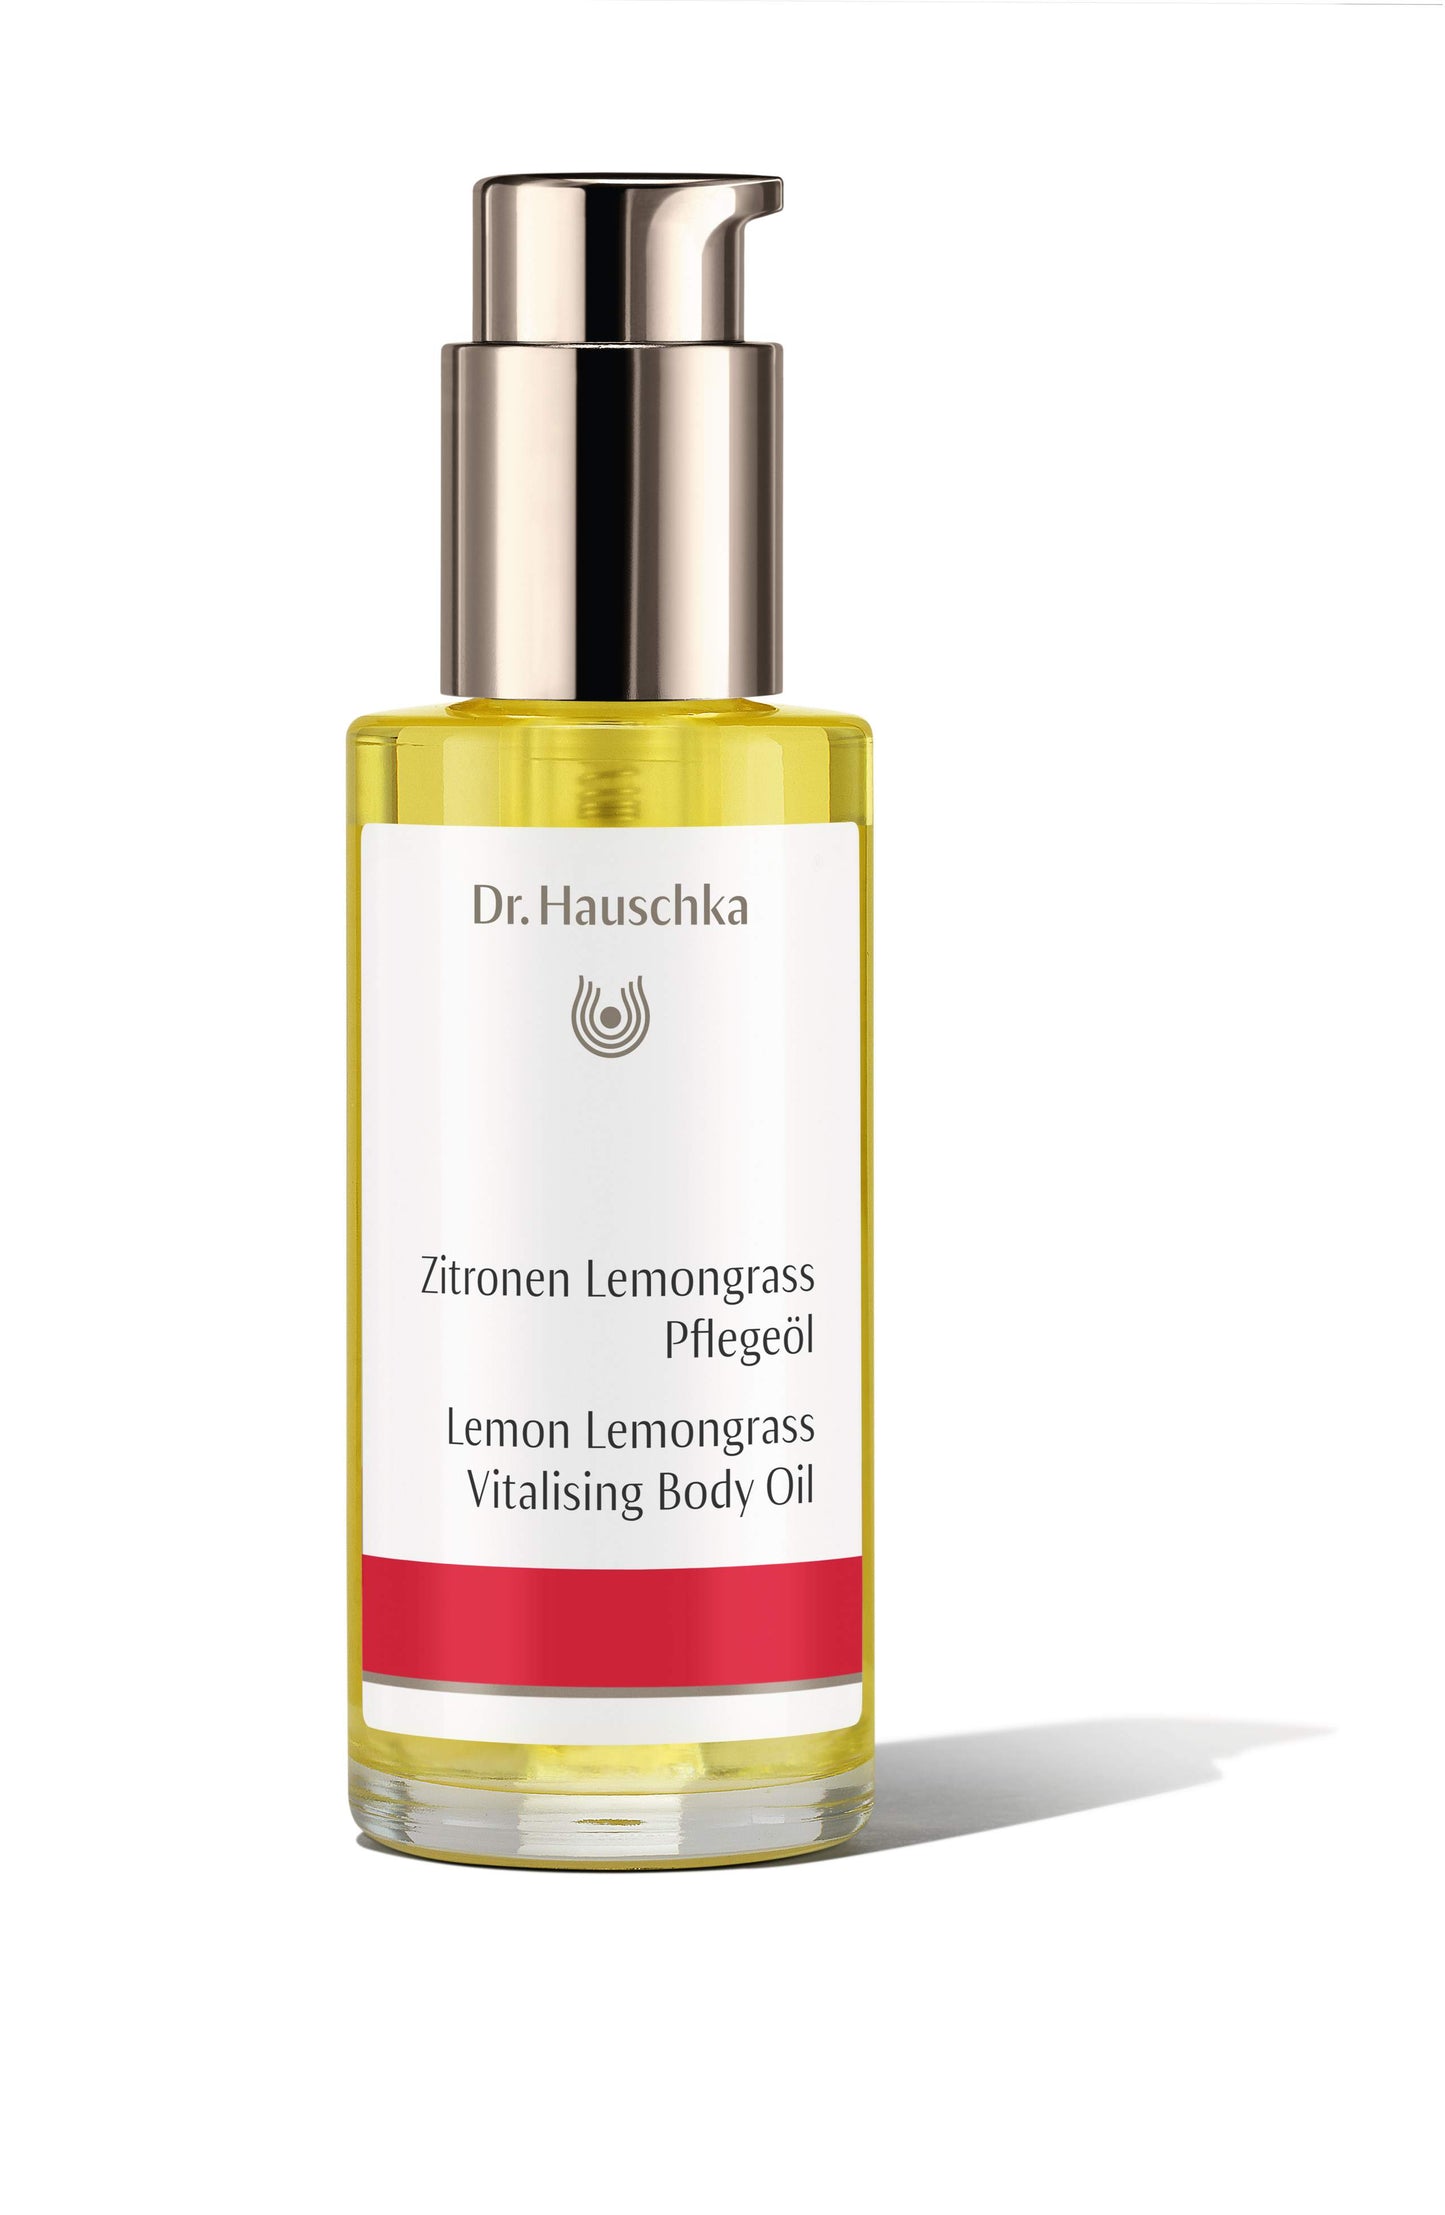 Dr. Hauschka - Zitronen Lemongrass Pflegeöl - 75 ml